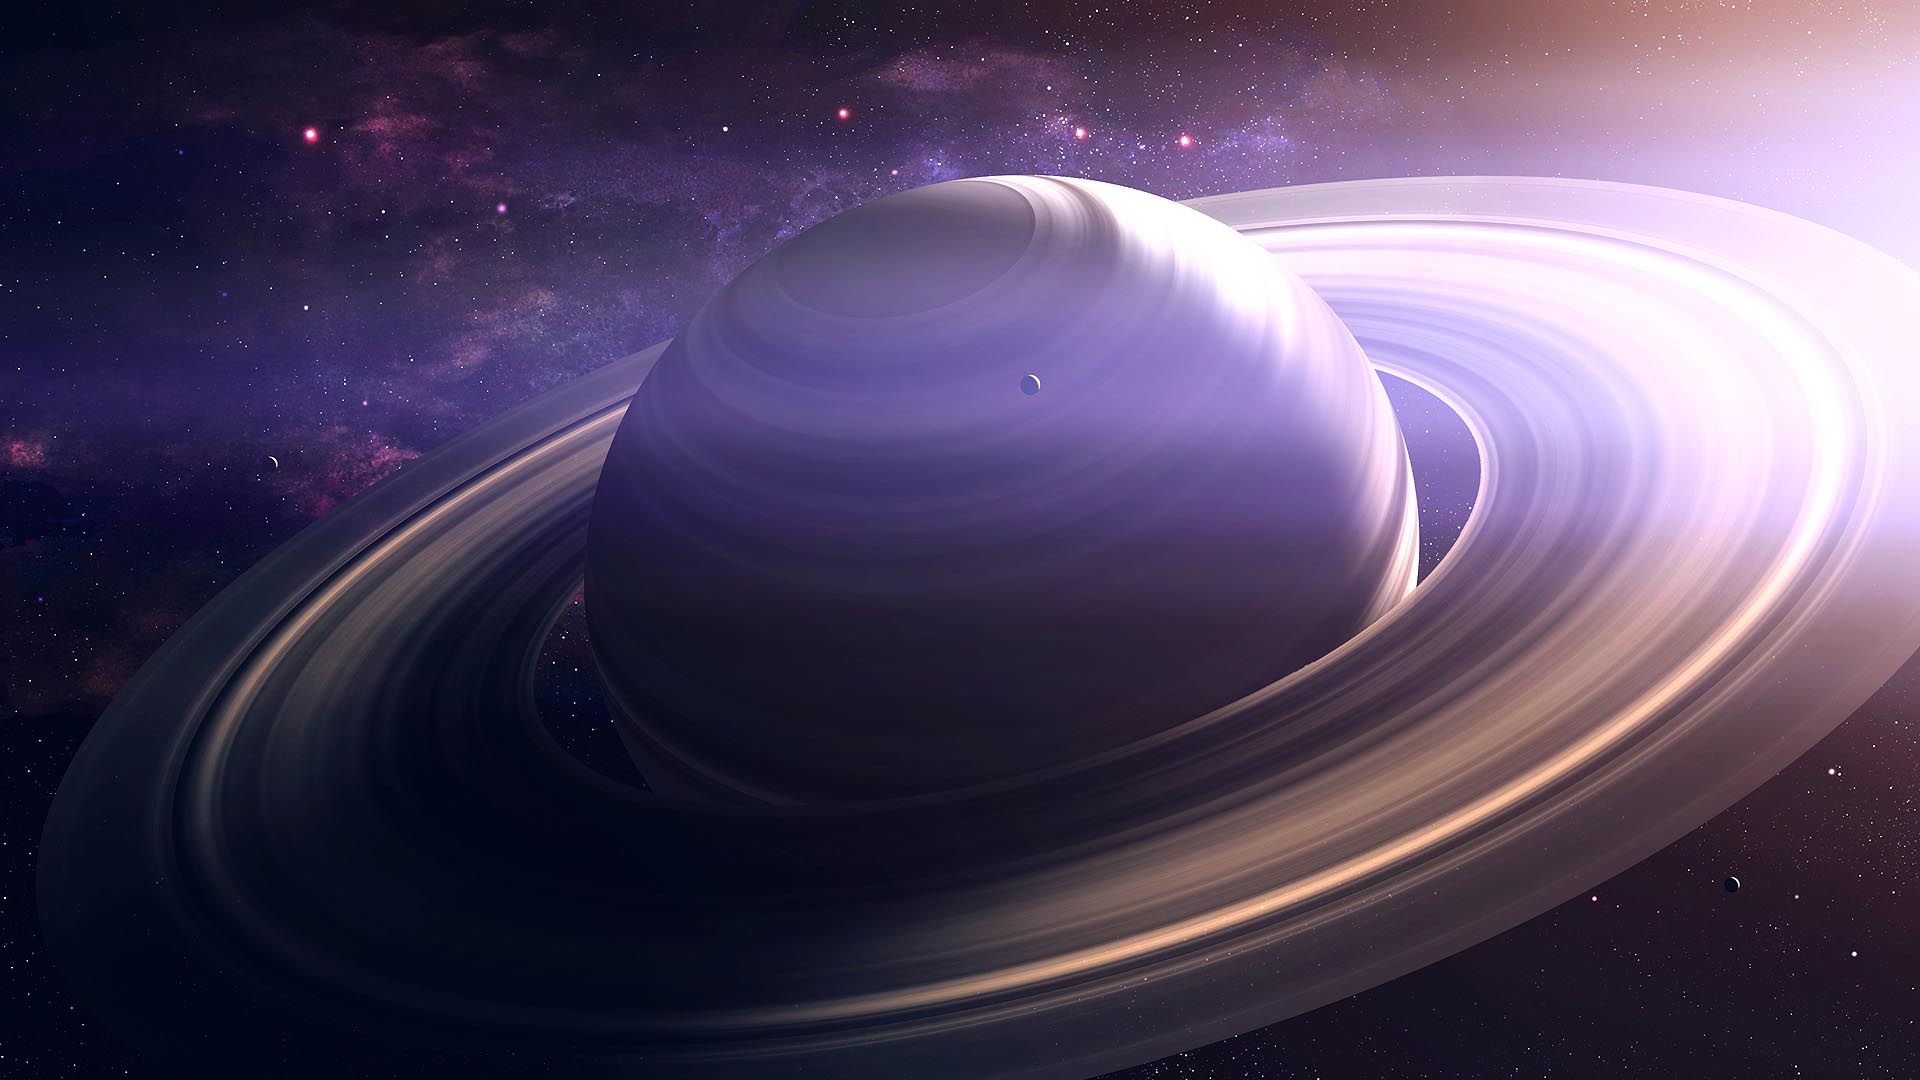 Las imágenes, cortesía de Cassini, son las fotos más detalladas que existen de los anillos del planeta